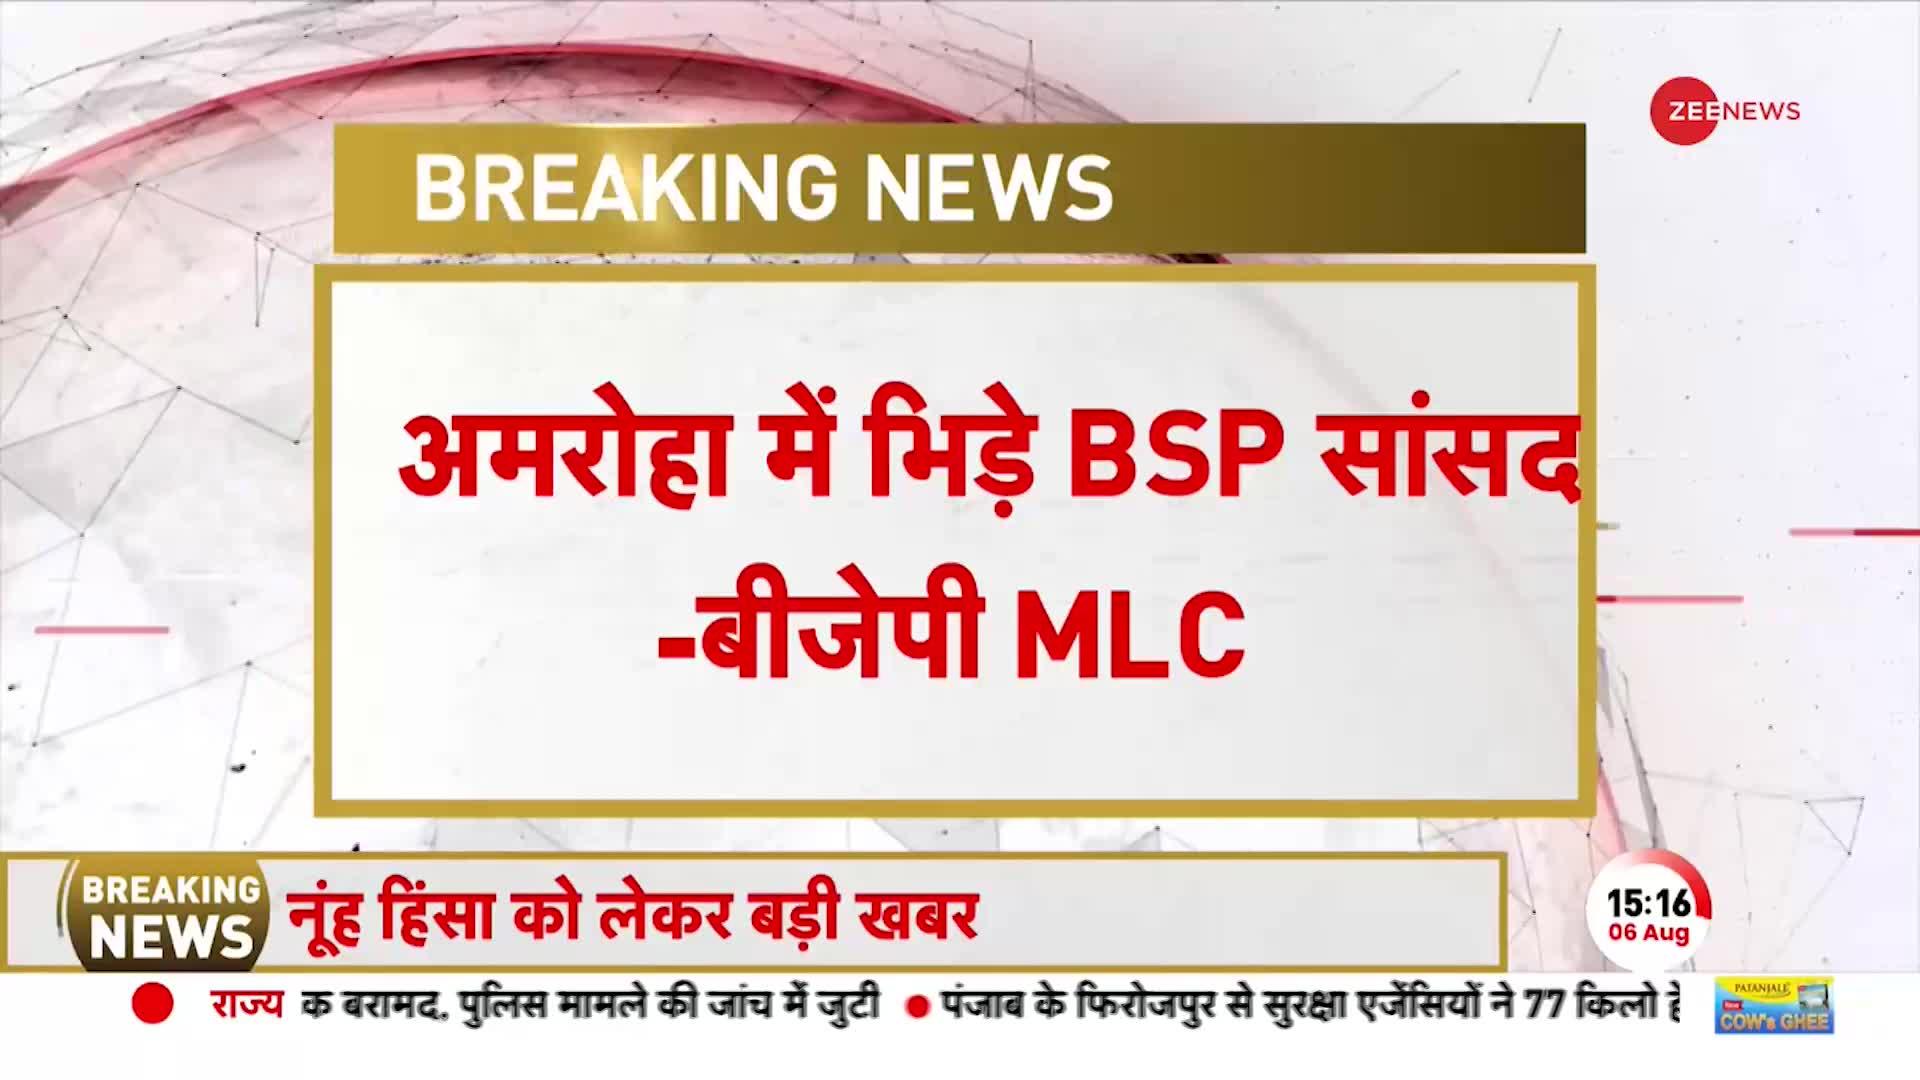 Amroha Breaking: भारत माता की जय का नारा लगाने पर अमरोहा में BSP सांसद और BJP MLC भिड़े